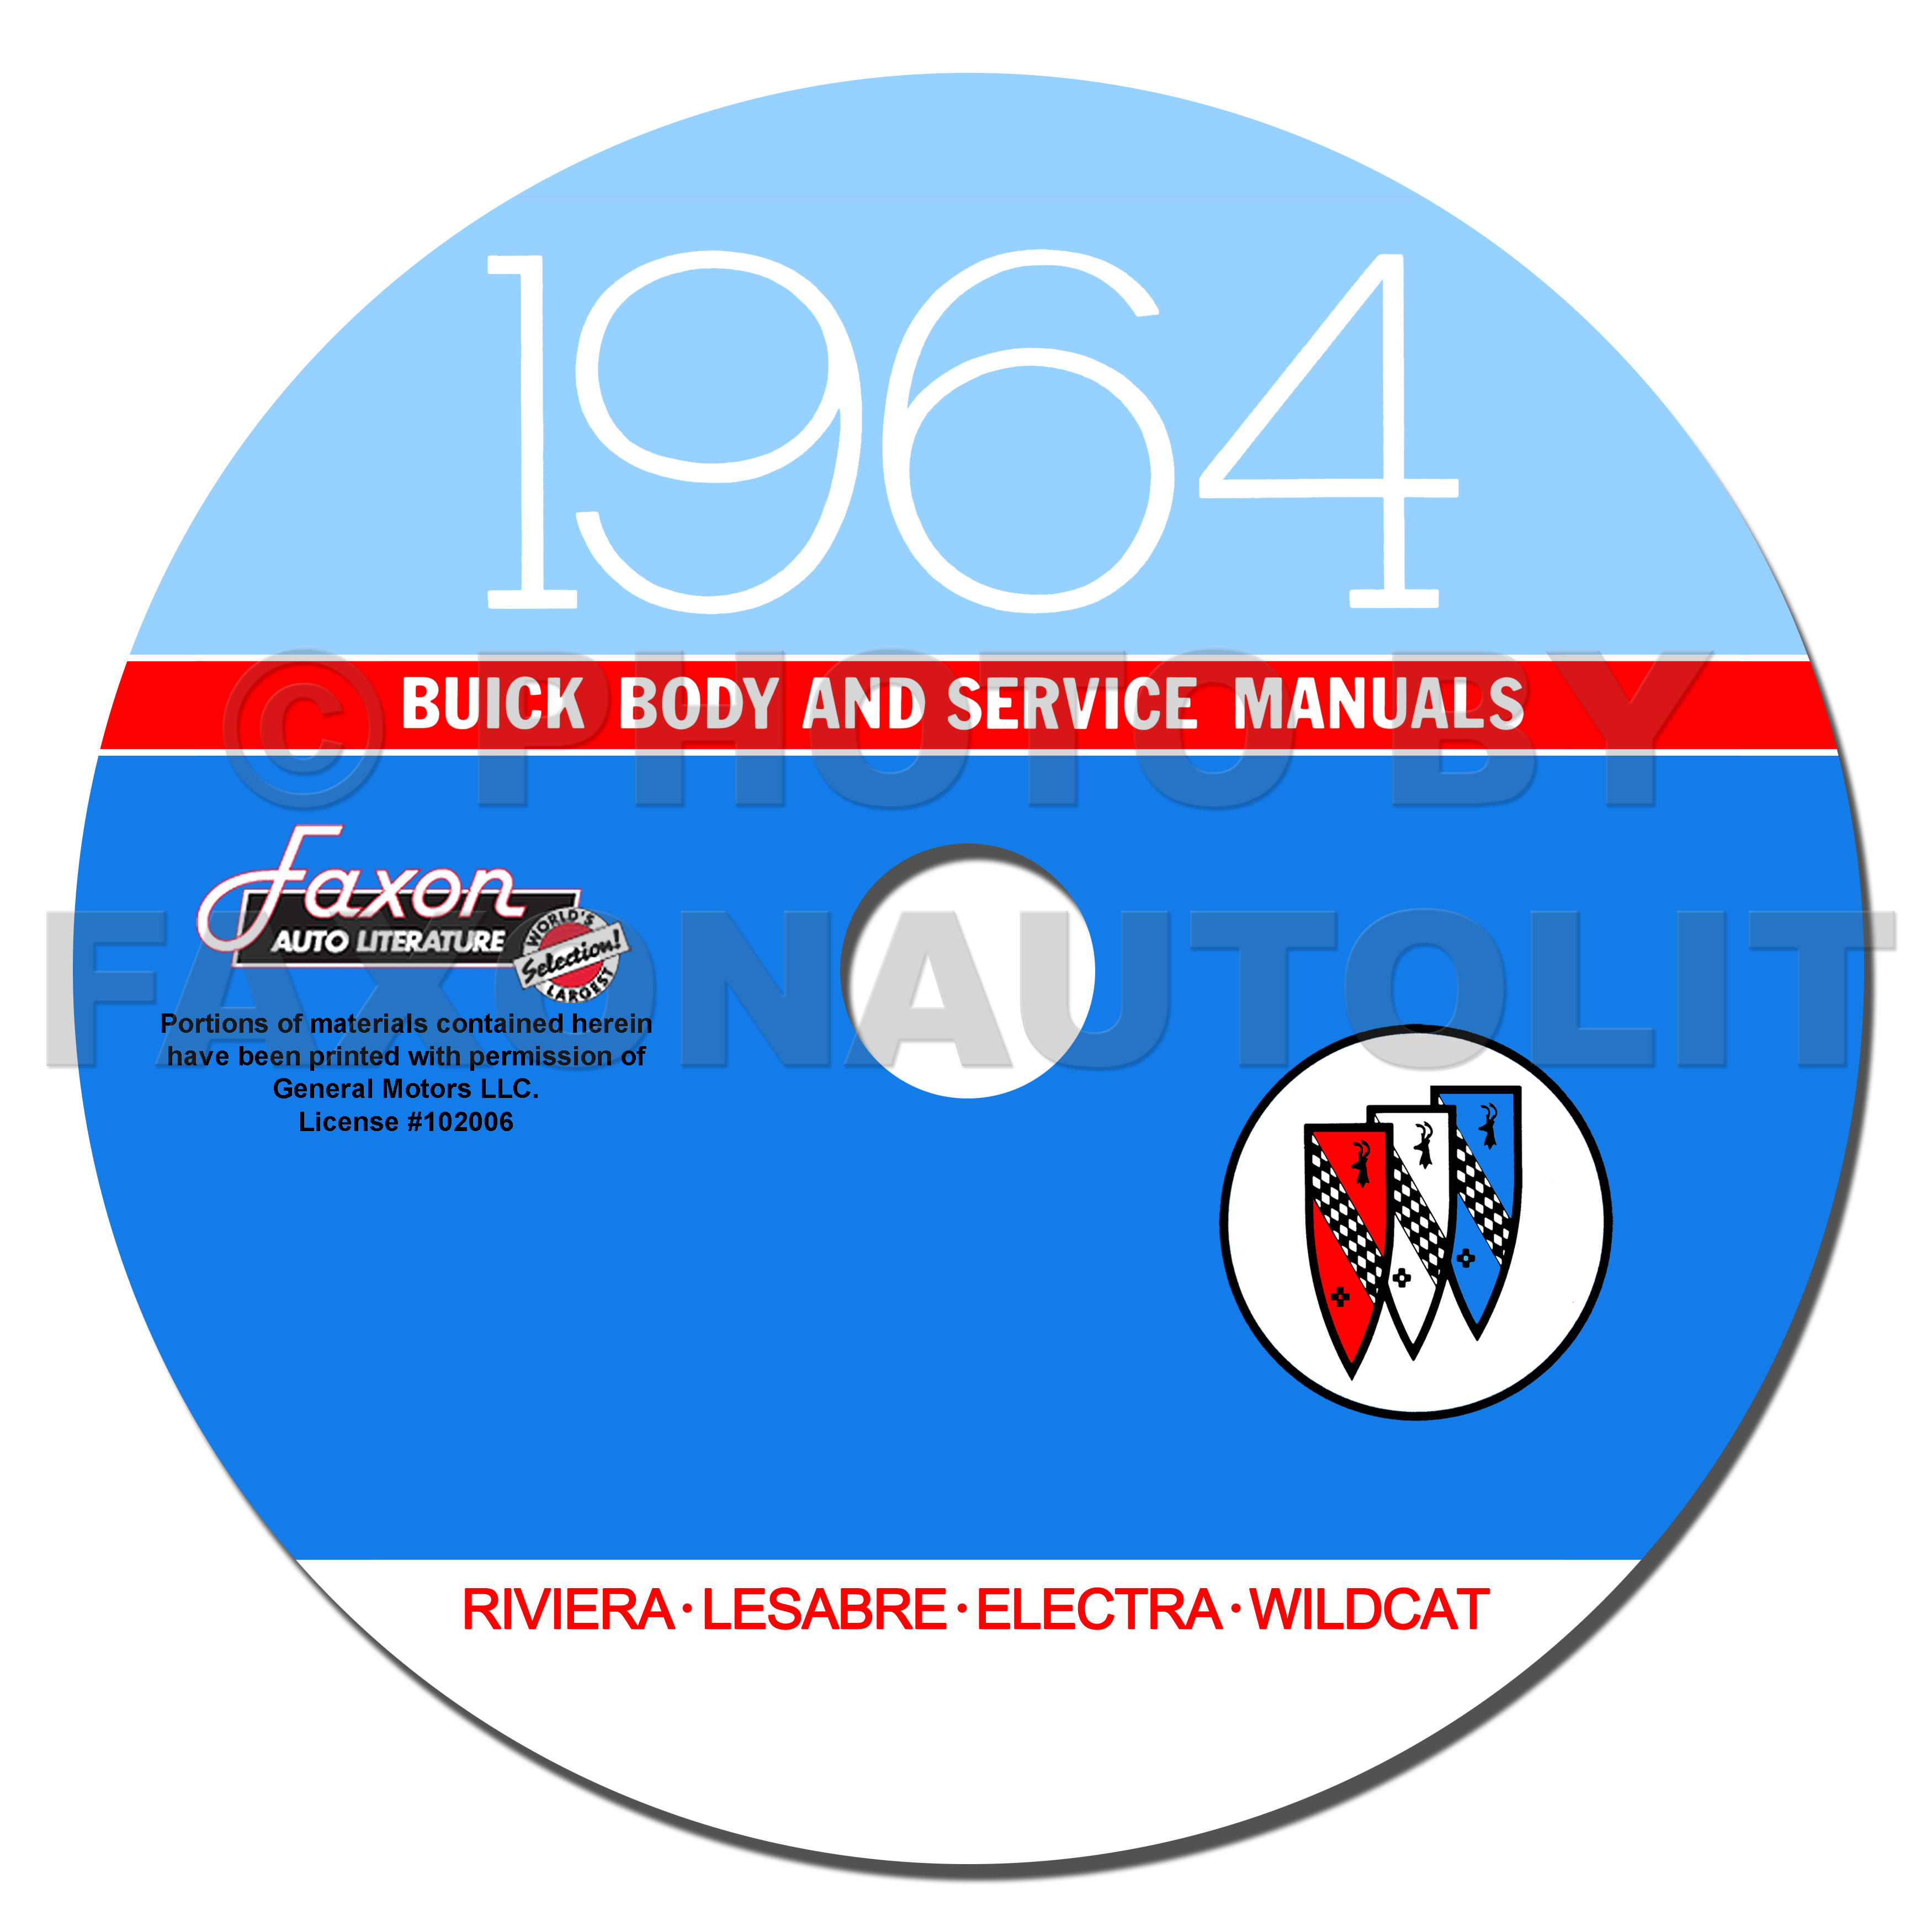 1964 Buick CD-ROM Shop Manual & Body Manual